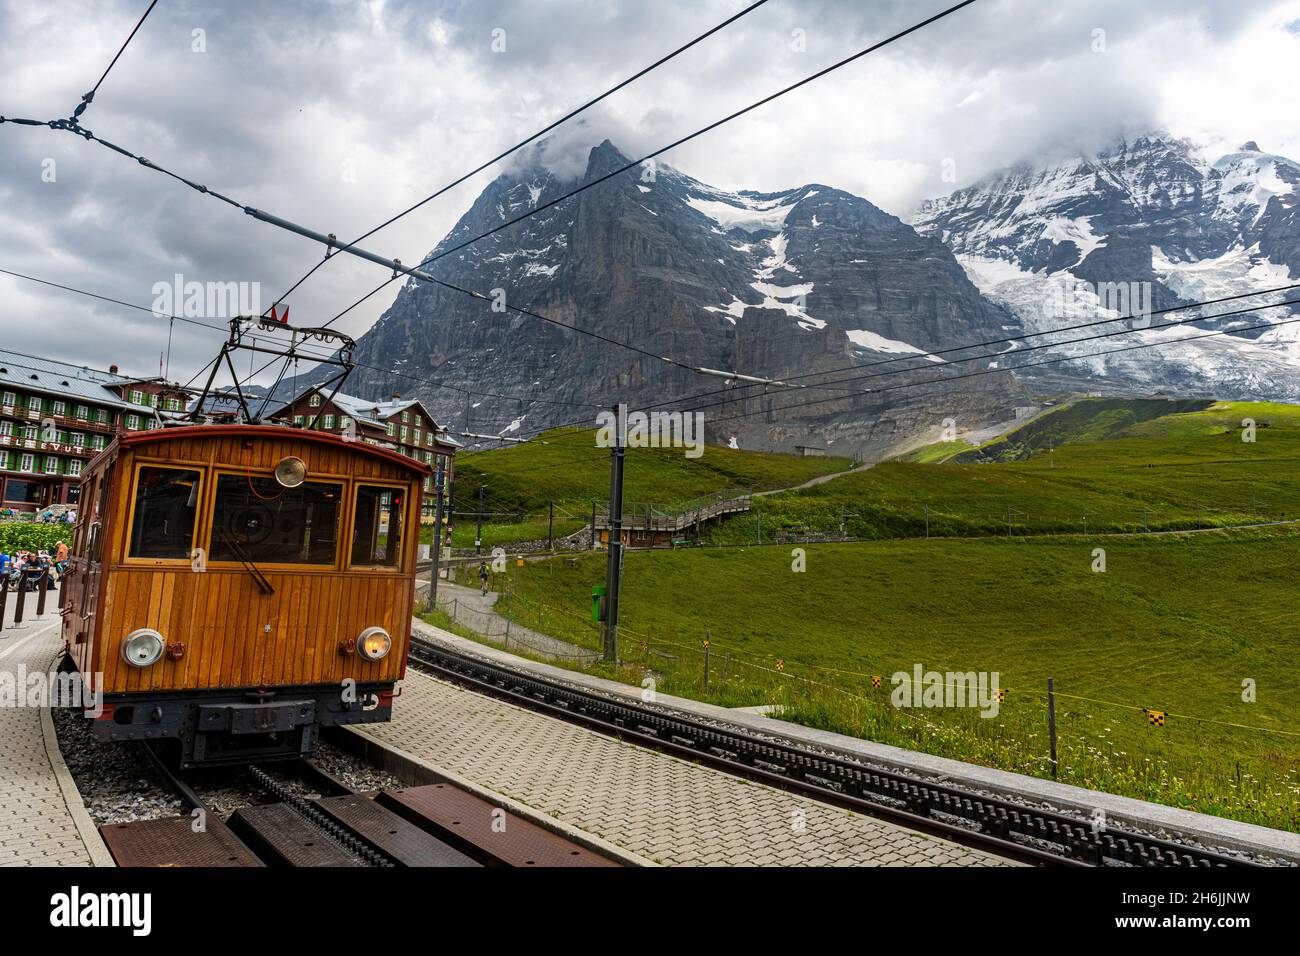 The Jungfrau railway below the Eiger North Face, Kleine Scheidegg, Bernese Oberland, Switzerland, Europe Stock Photo